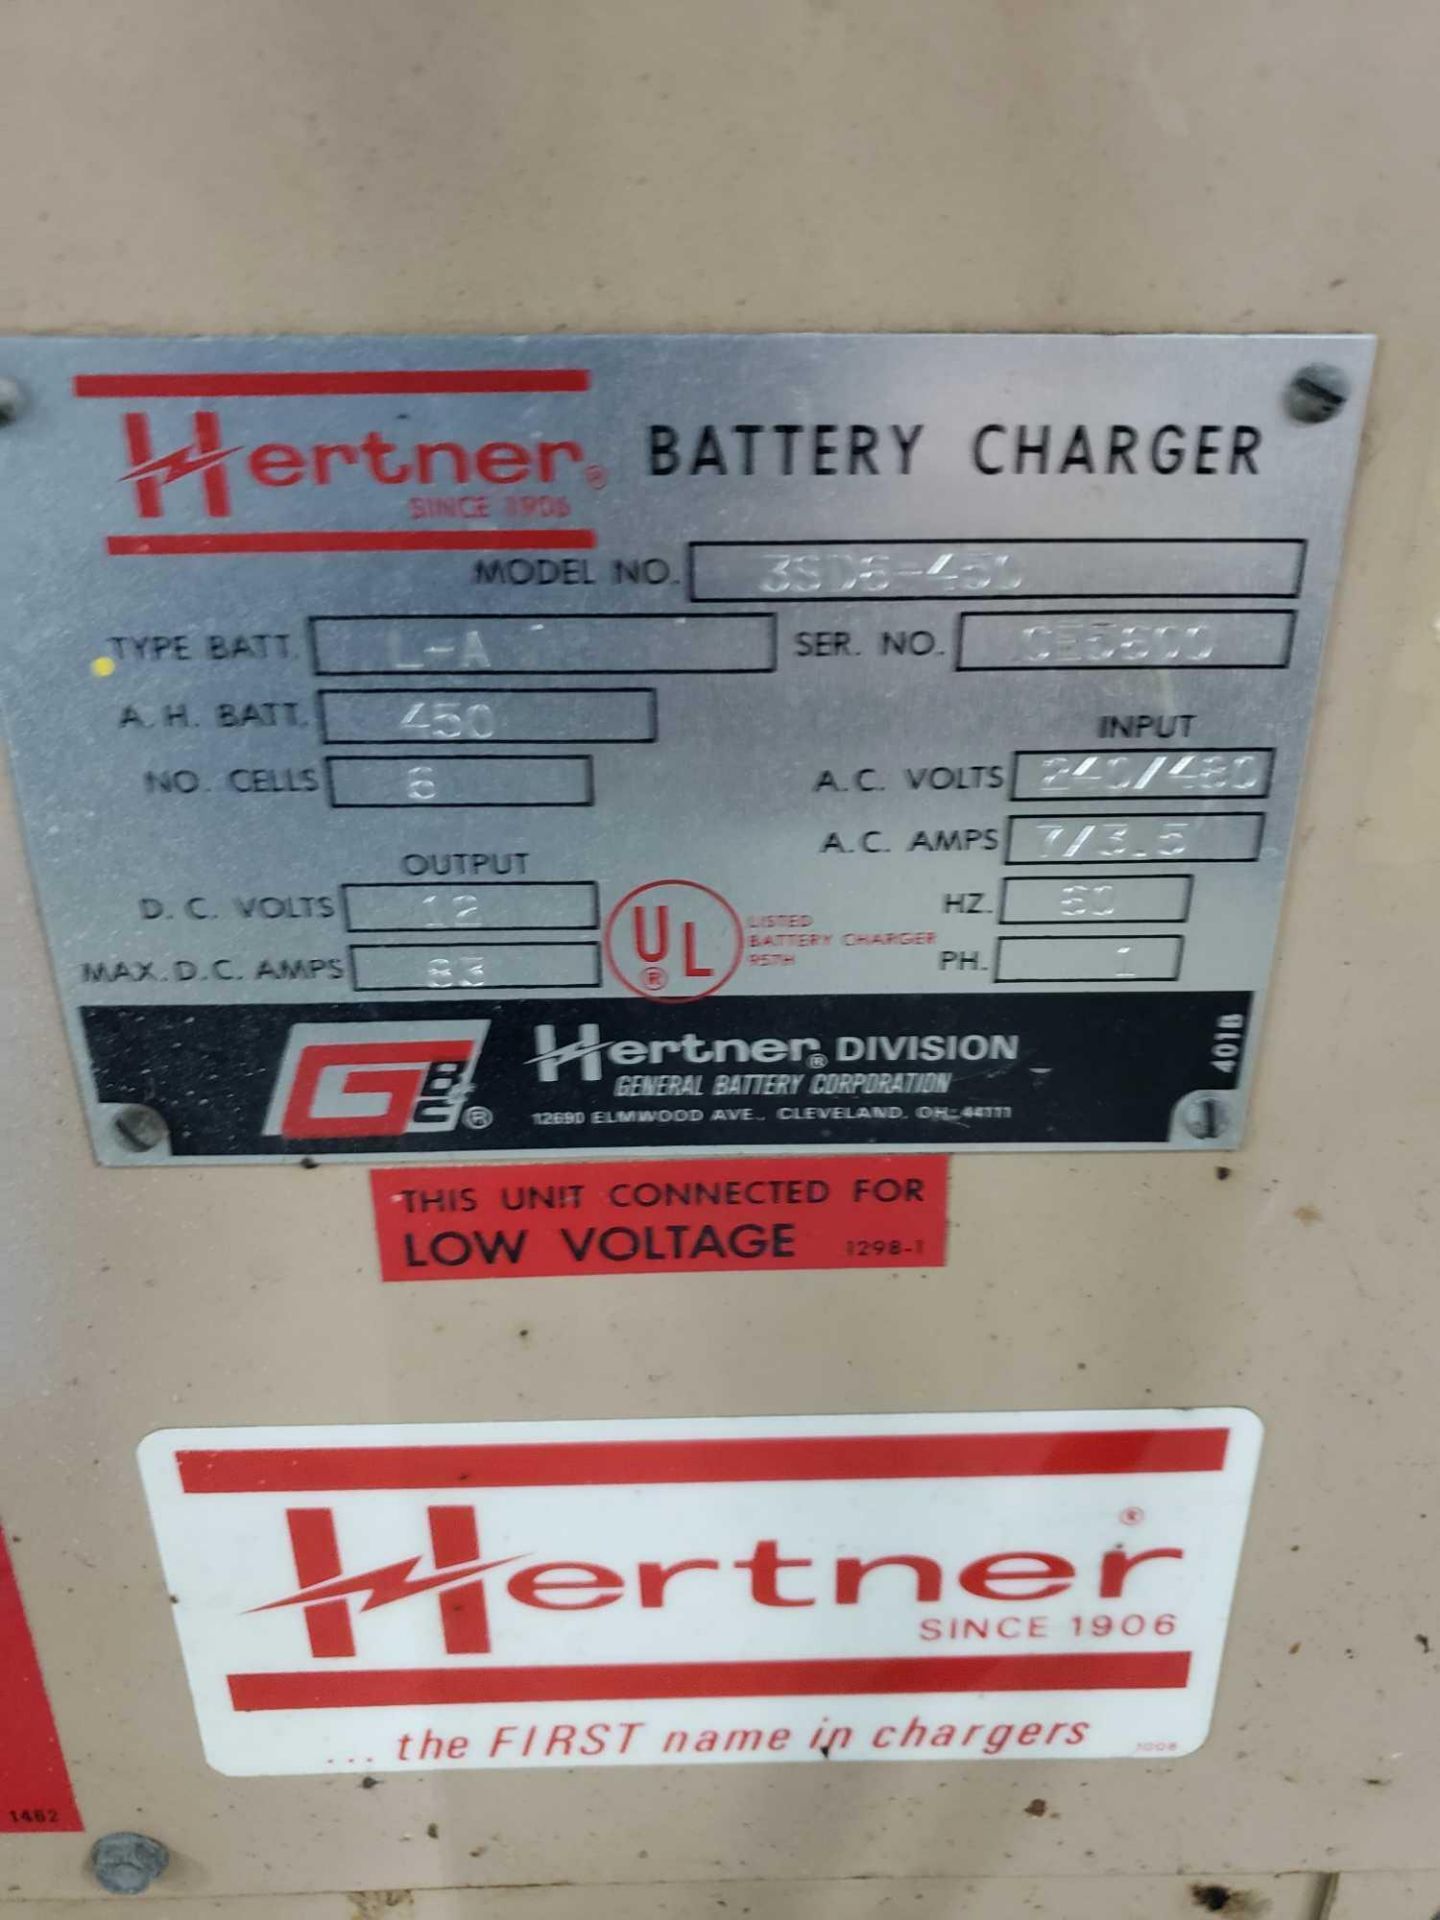 Hertner 12v forklift battery charger. 450ah, single phase 240/480v input. - Image 2 of 2